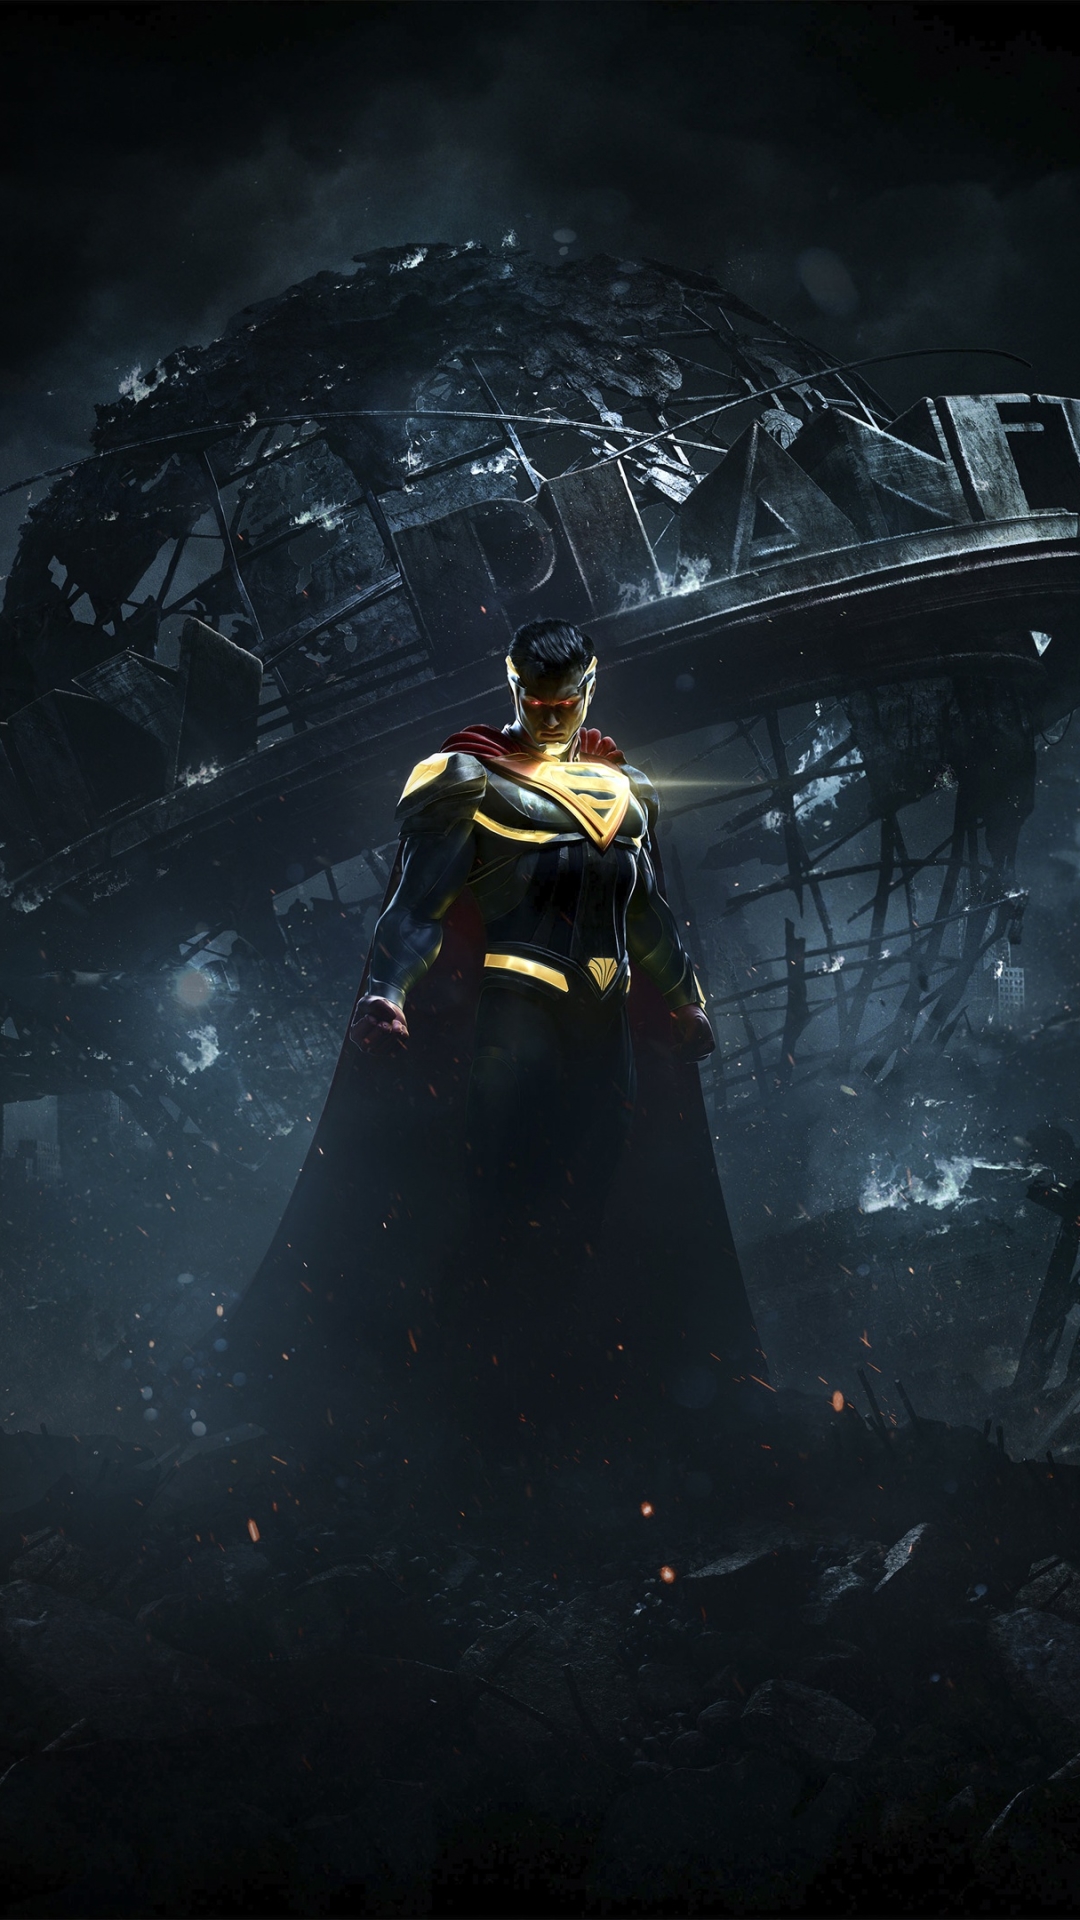 Descarga gratuita de fondo de pantalla para móvil de Superhombre, Videojuego, Injustice: Gods Among Us, Injustice 2.